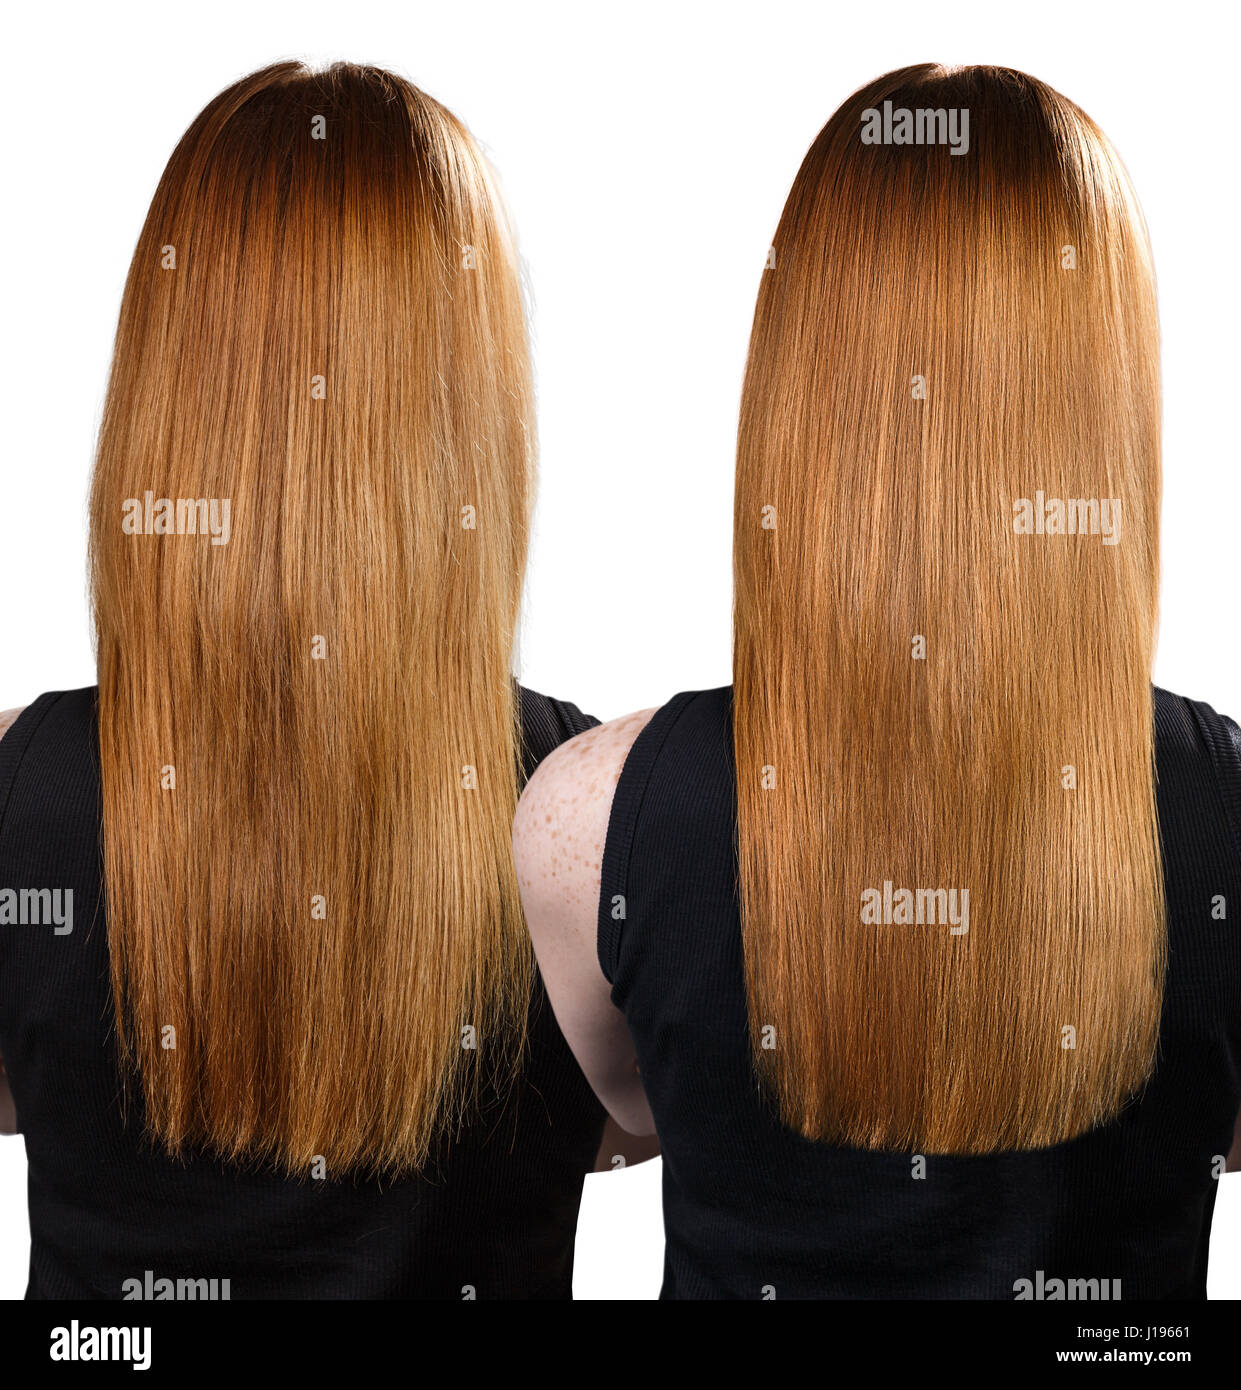 Haare vor und nach der Behandlung. Stockfoto